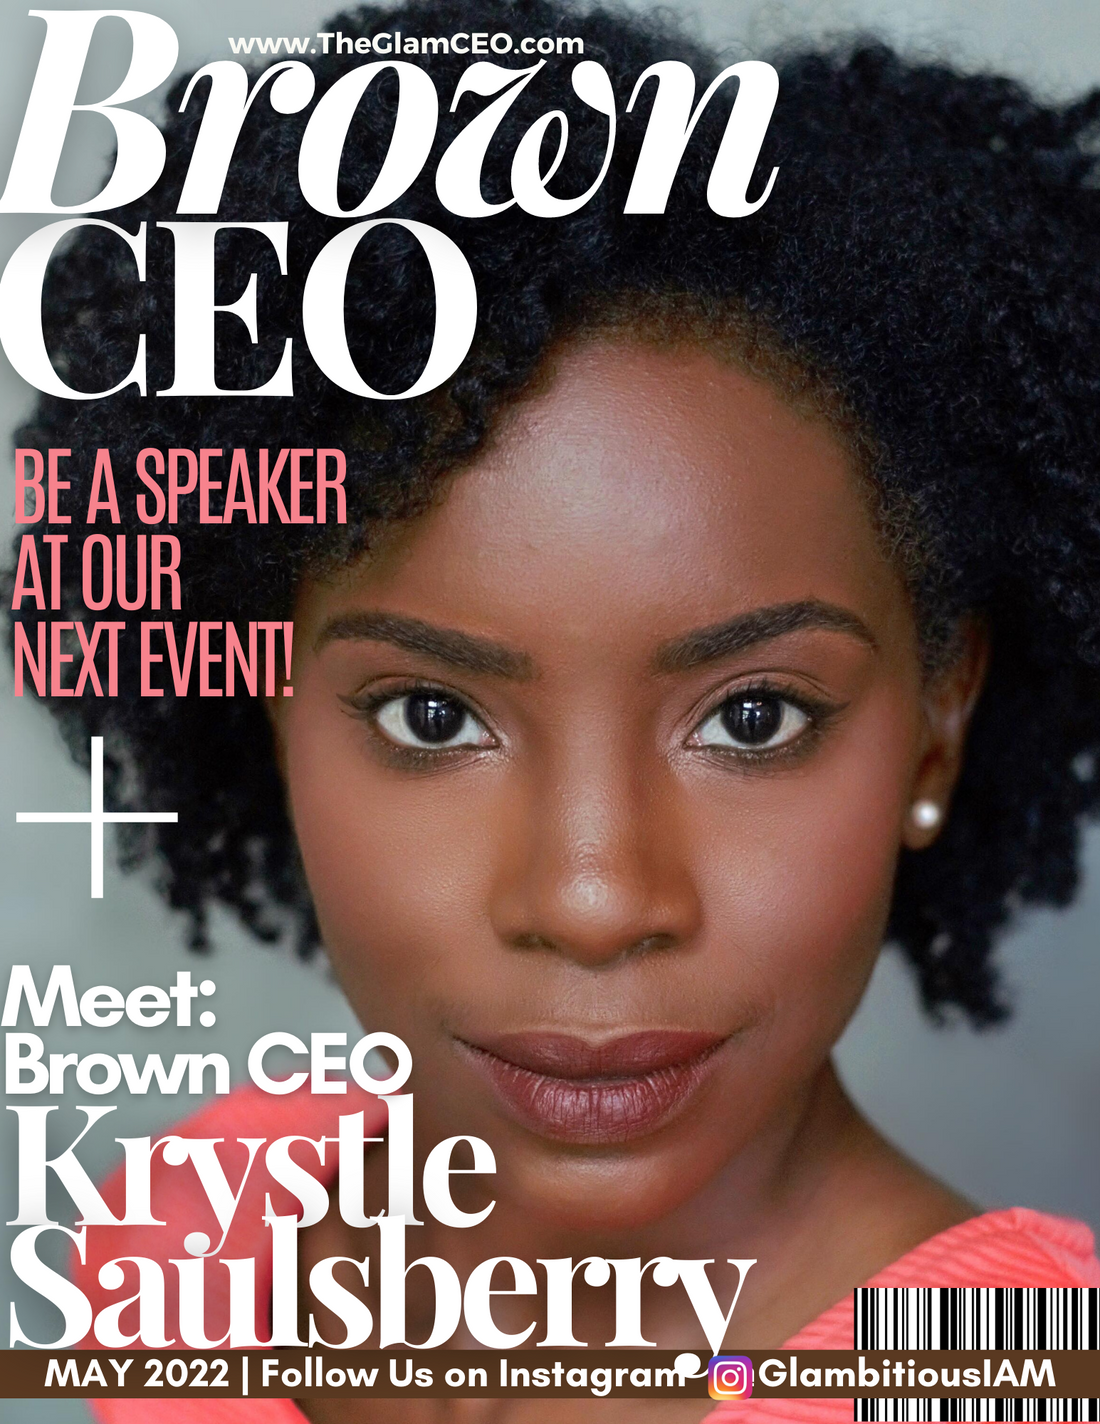 Meet Brown CEO: Krystle Saulsberry